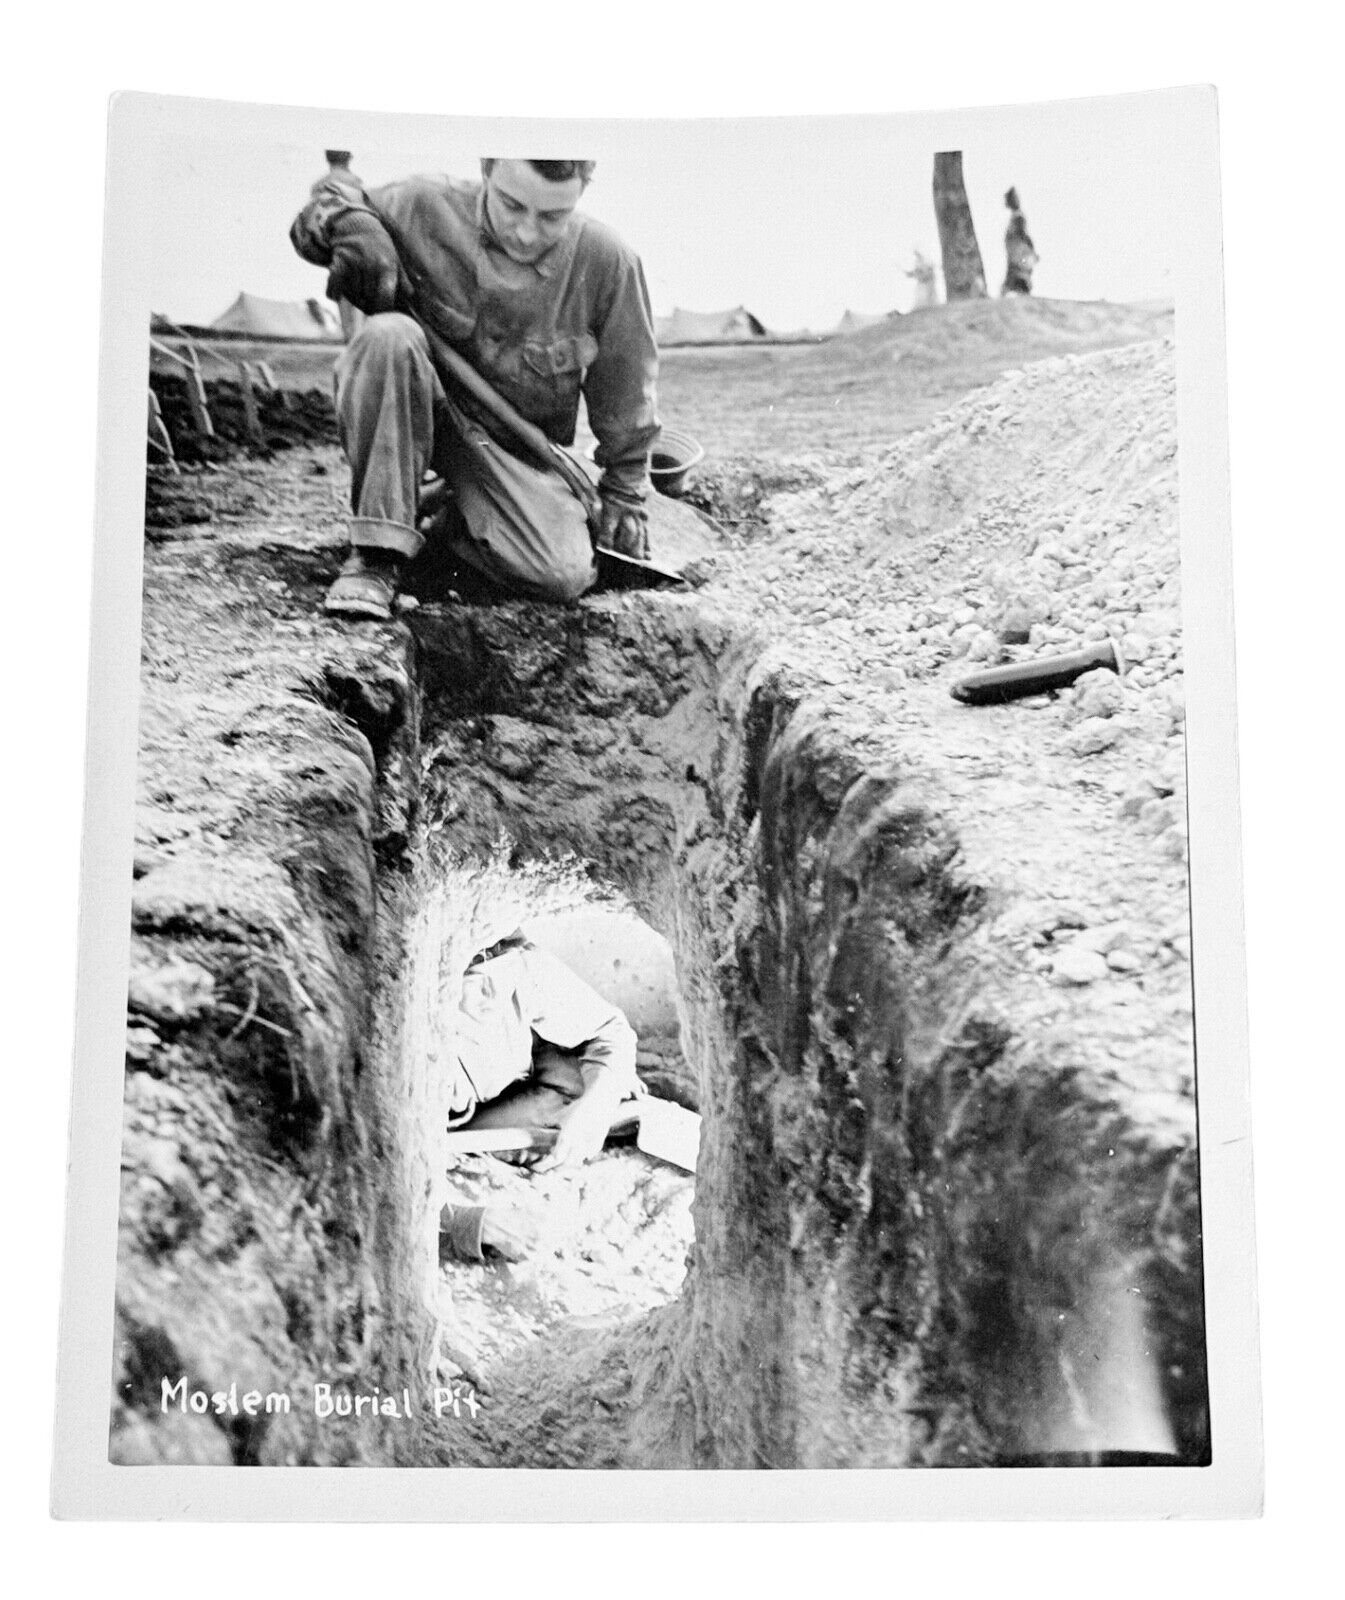 WW2 Era Photo U.S. GI Holding Shovel Inspecting Moslem Burial Pit North Africa